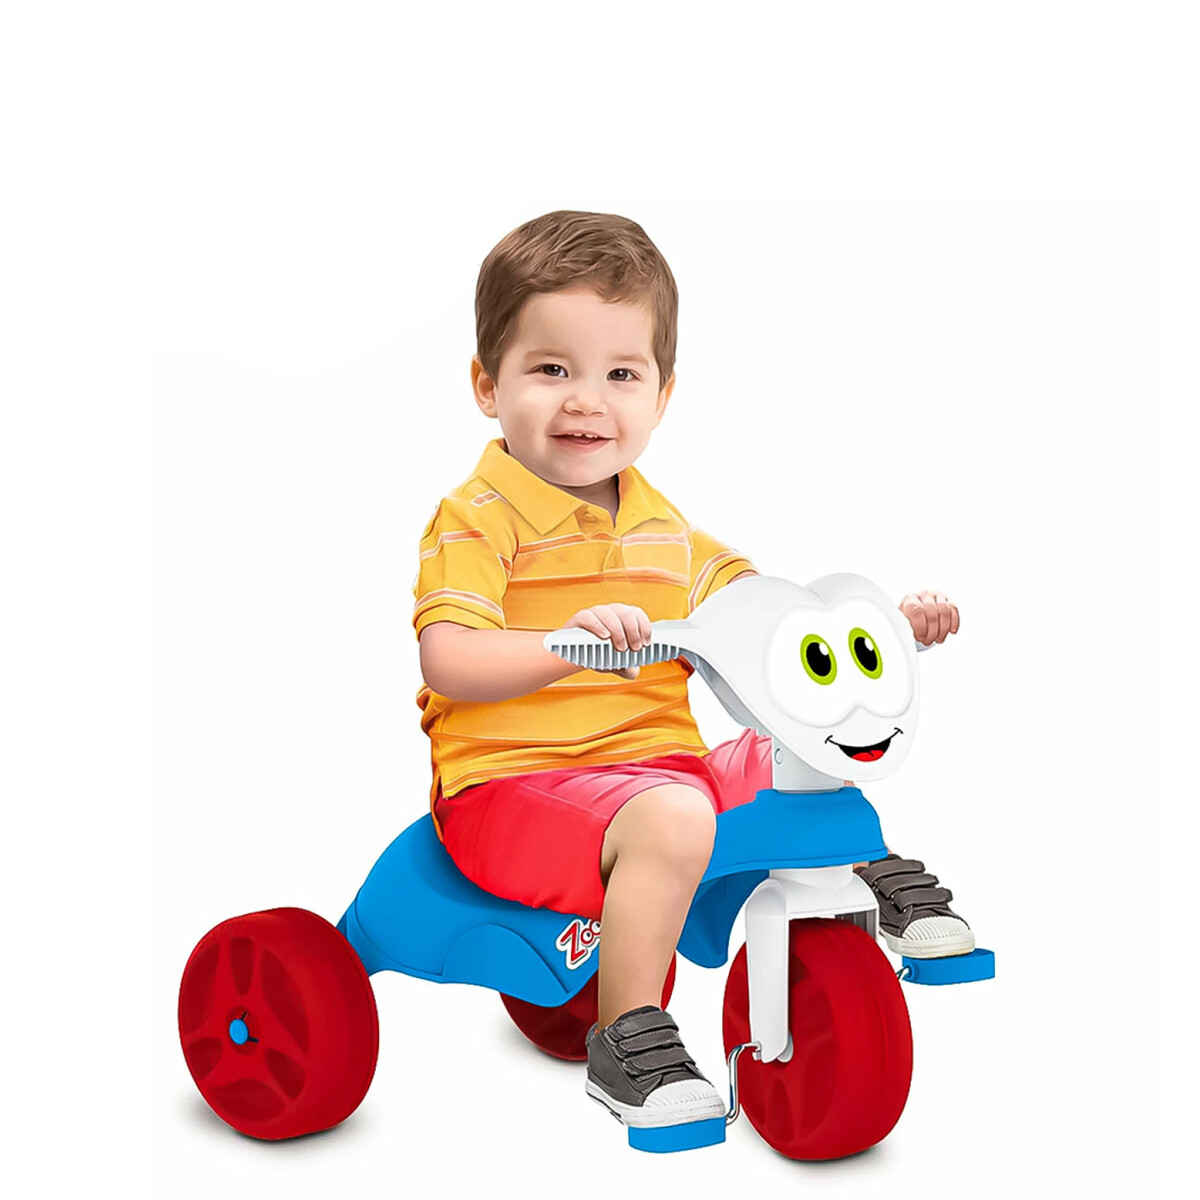 OUTLET - Triciclo Infantil A Pedal Zootiko C/Asiento Anatómico 